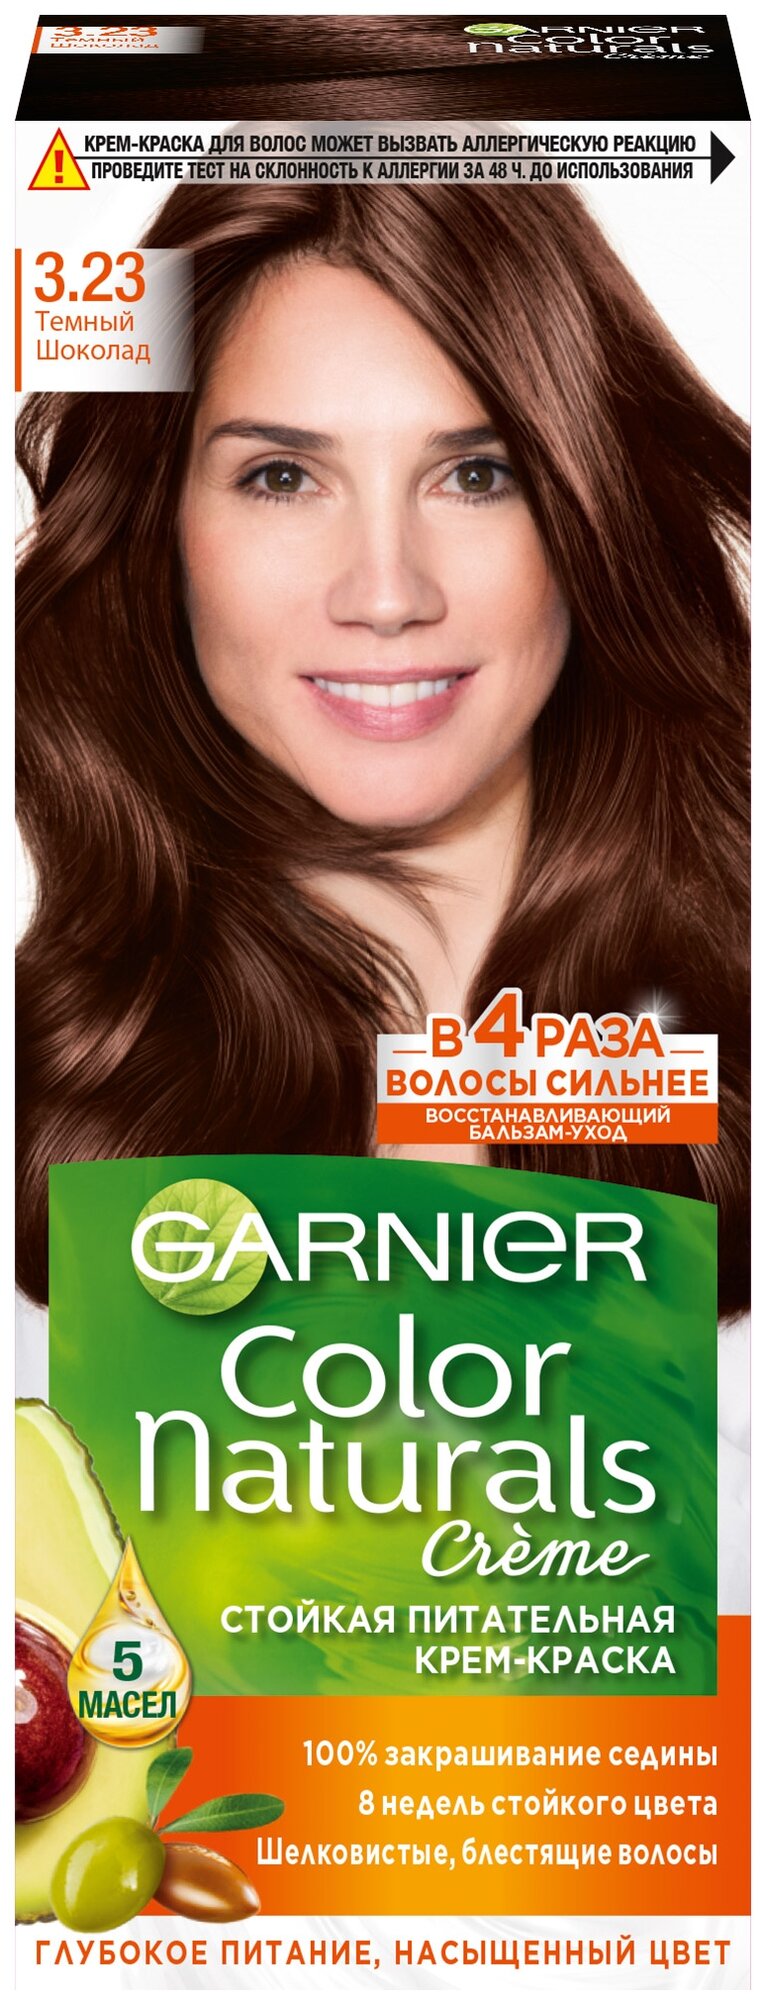 Гарньер Color Naturals Крем-краска для волос стойкая тон 3.23 темный шоколад с маслами оливы, авокадо, ши, клюквы и арганы 112мл / уход за волосами